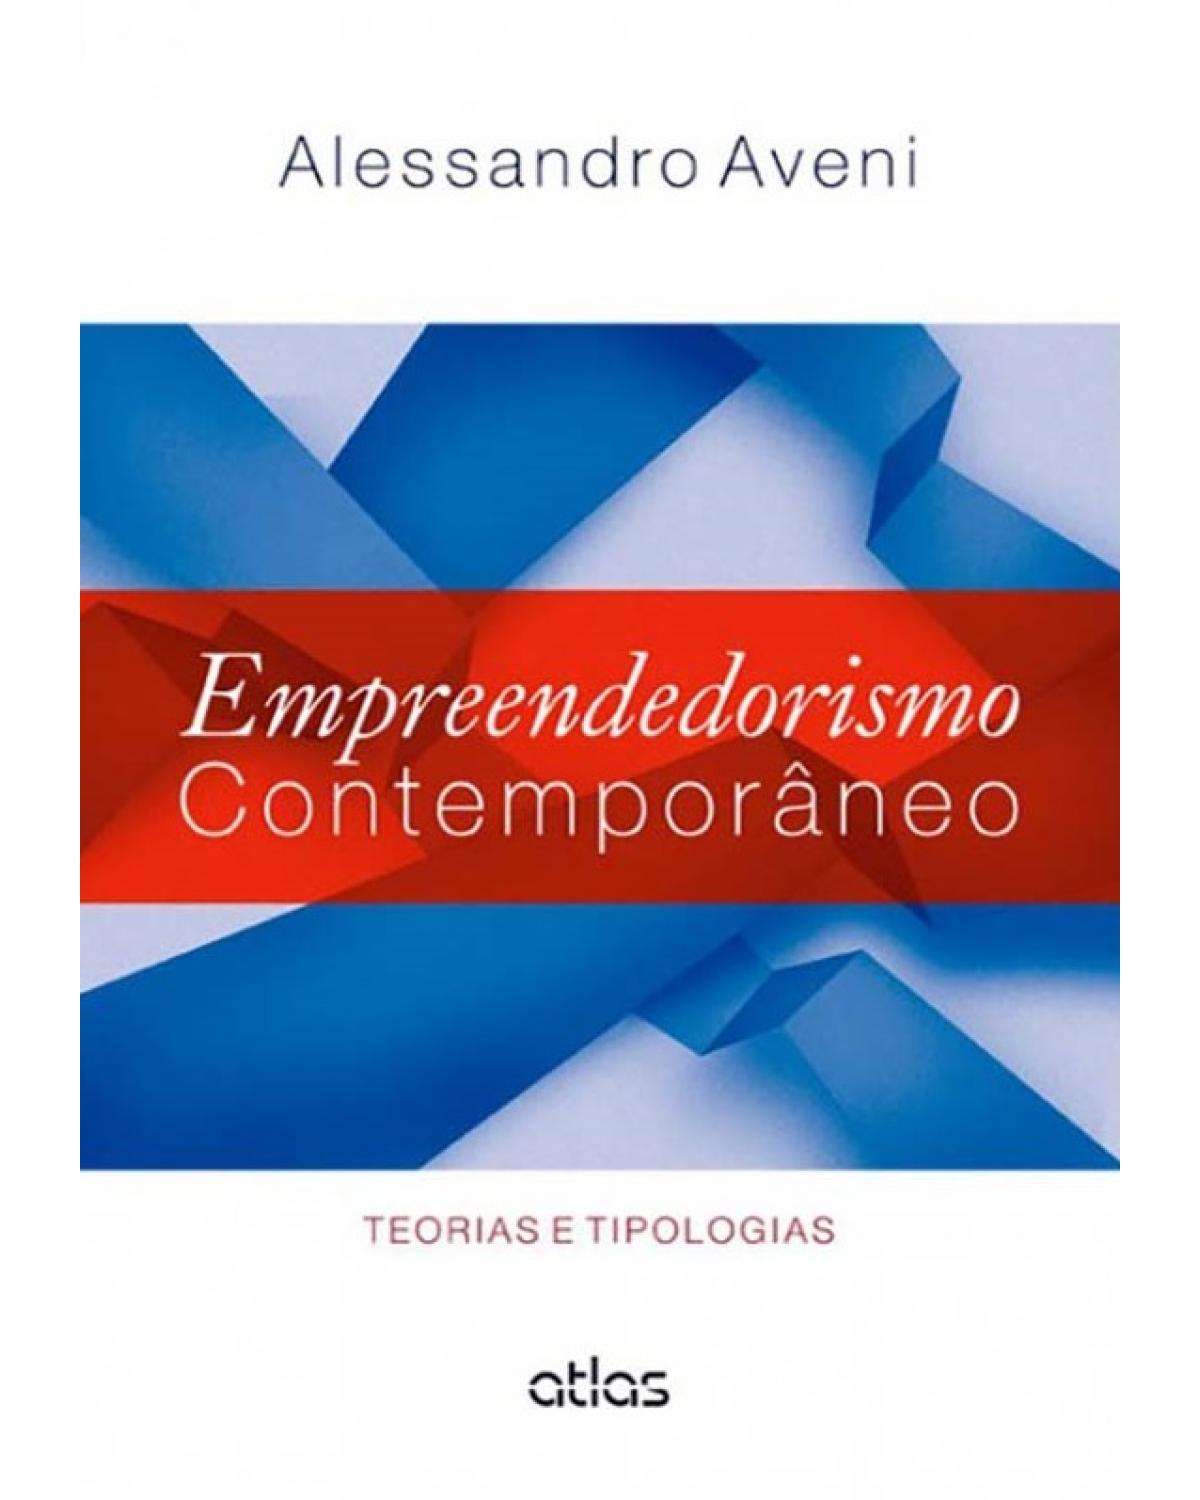 Empreendedorismo contemporâneo - Teorias e tipologias - 1ª Edição | 2014